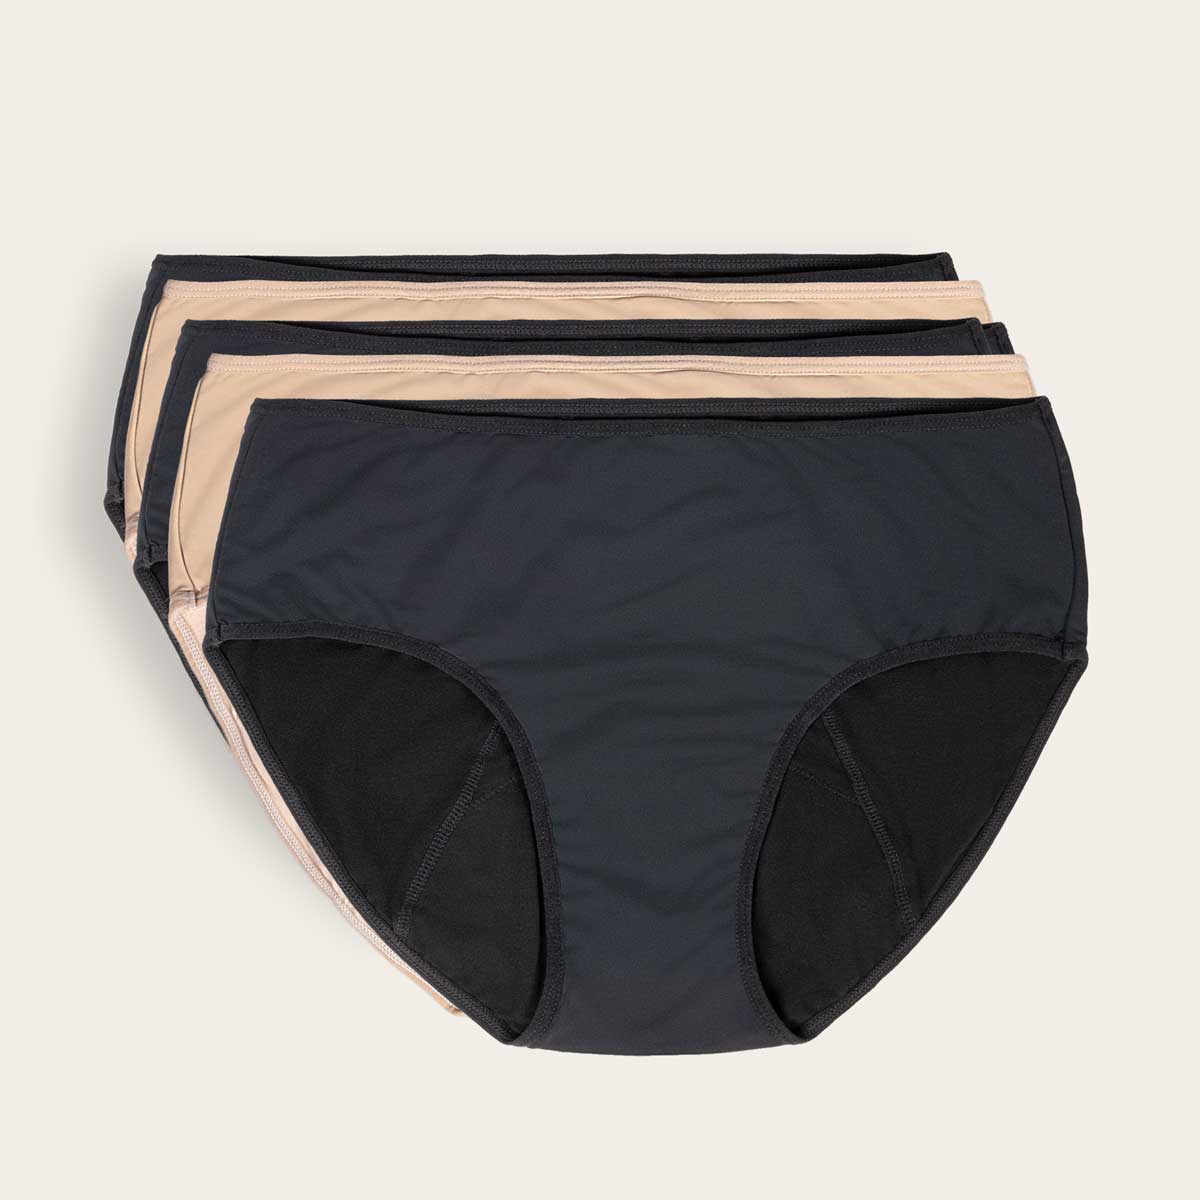 June Period Underwear - 5 Pack